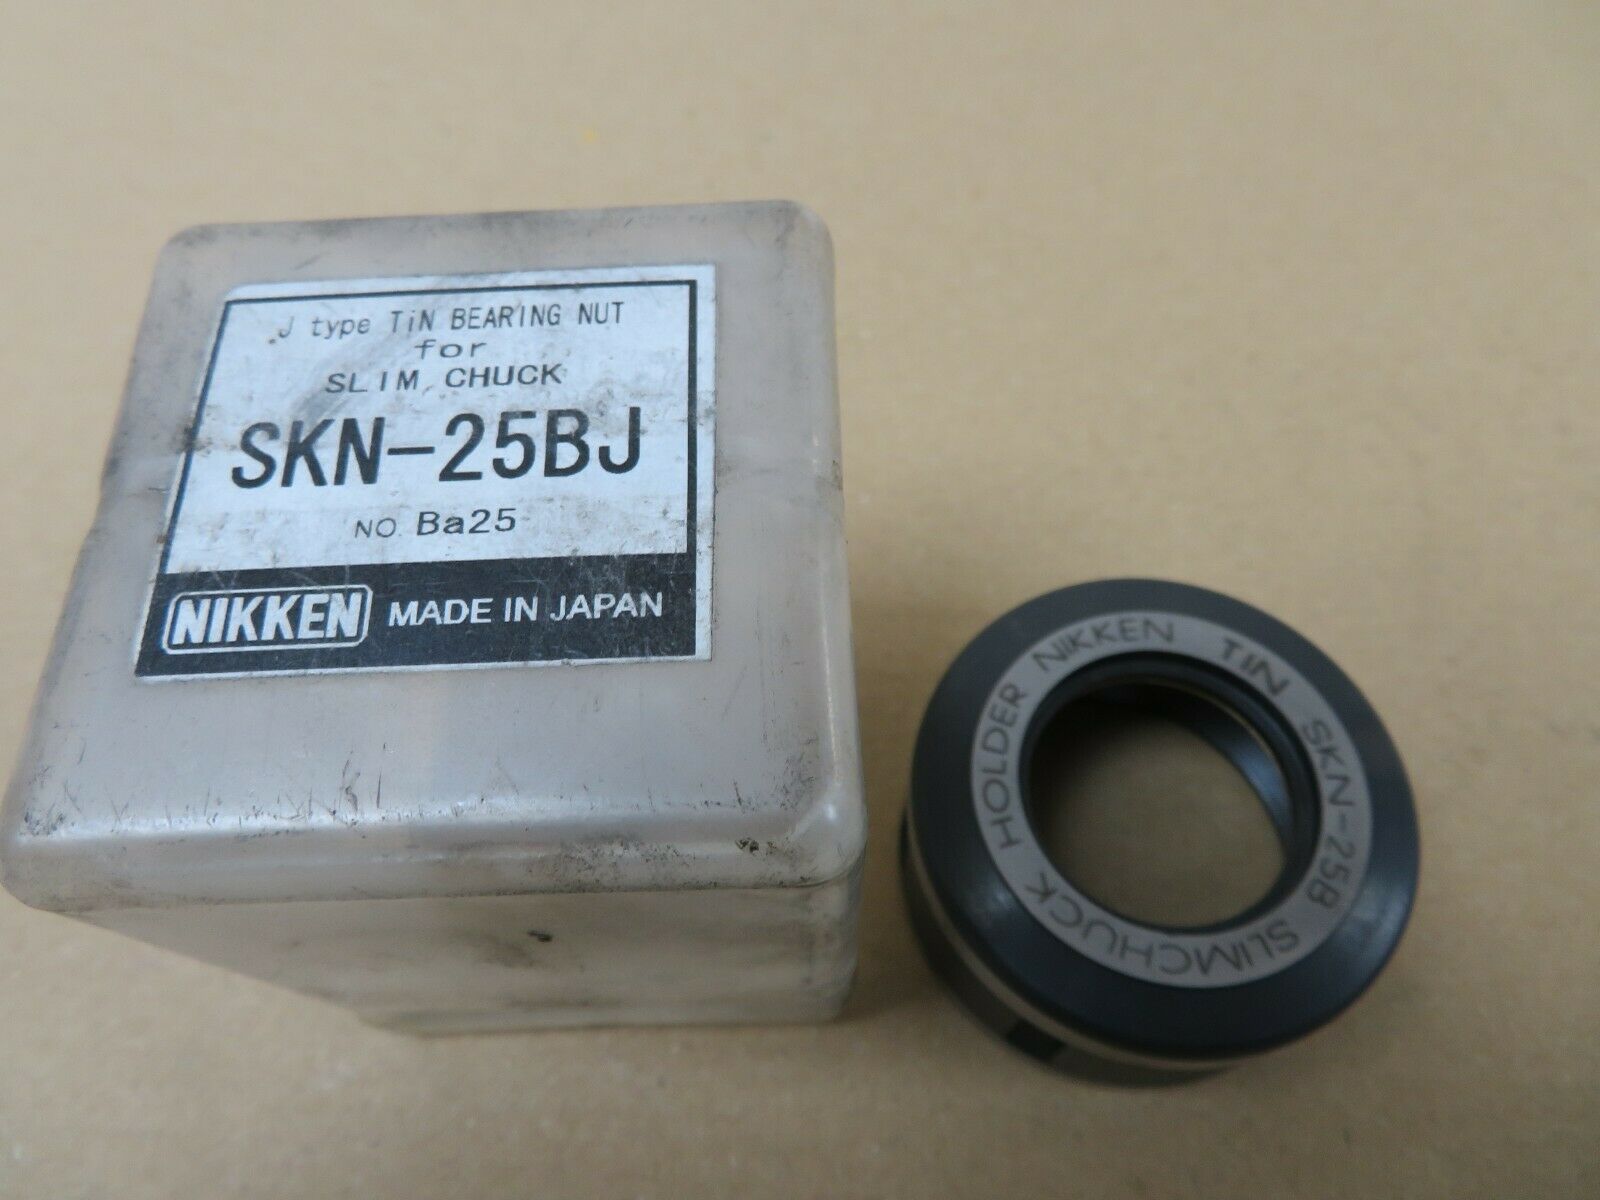 Nikken Nikken SKN-25BJ SK25 J Type Tin Bearing Collet Chuck Nut For Slim Chuck 